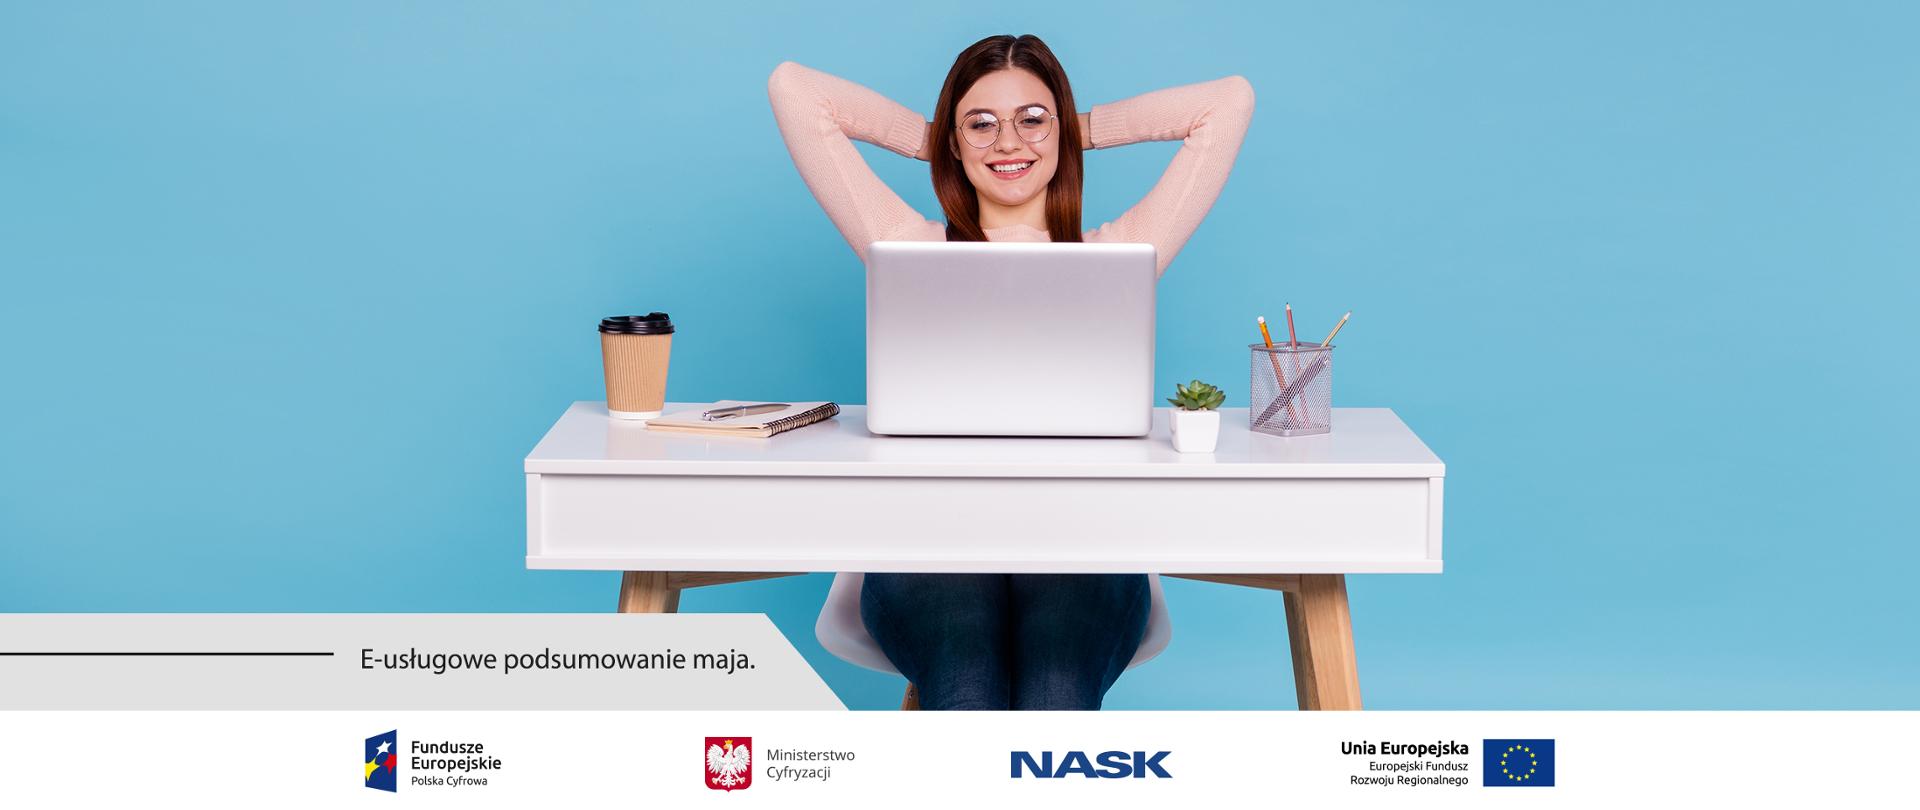 Grafika. Uśmiechnięta kobieta siedzi przed laptopem. Poniżej napis: E-usługowe podsumowanie maja. 